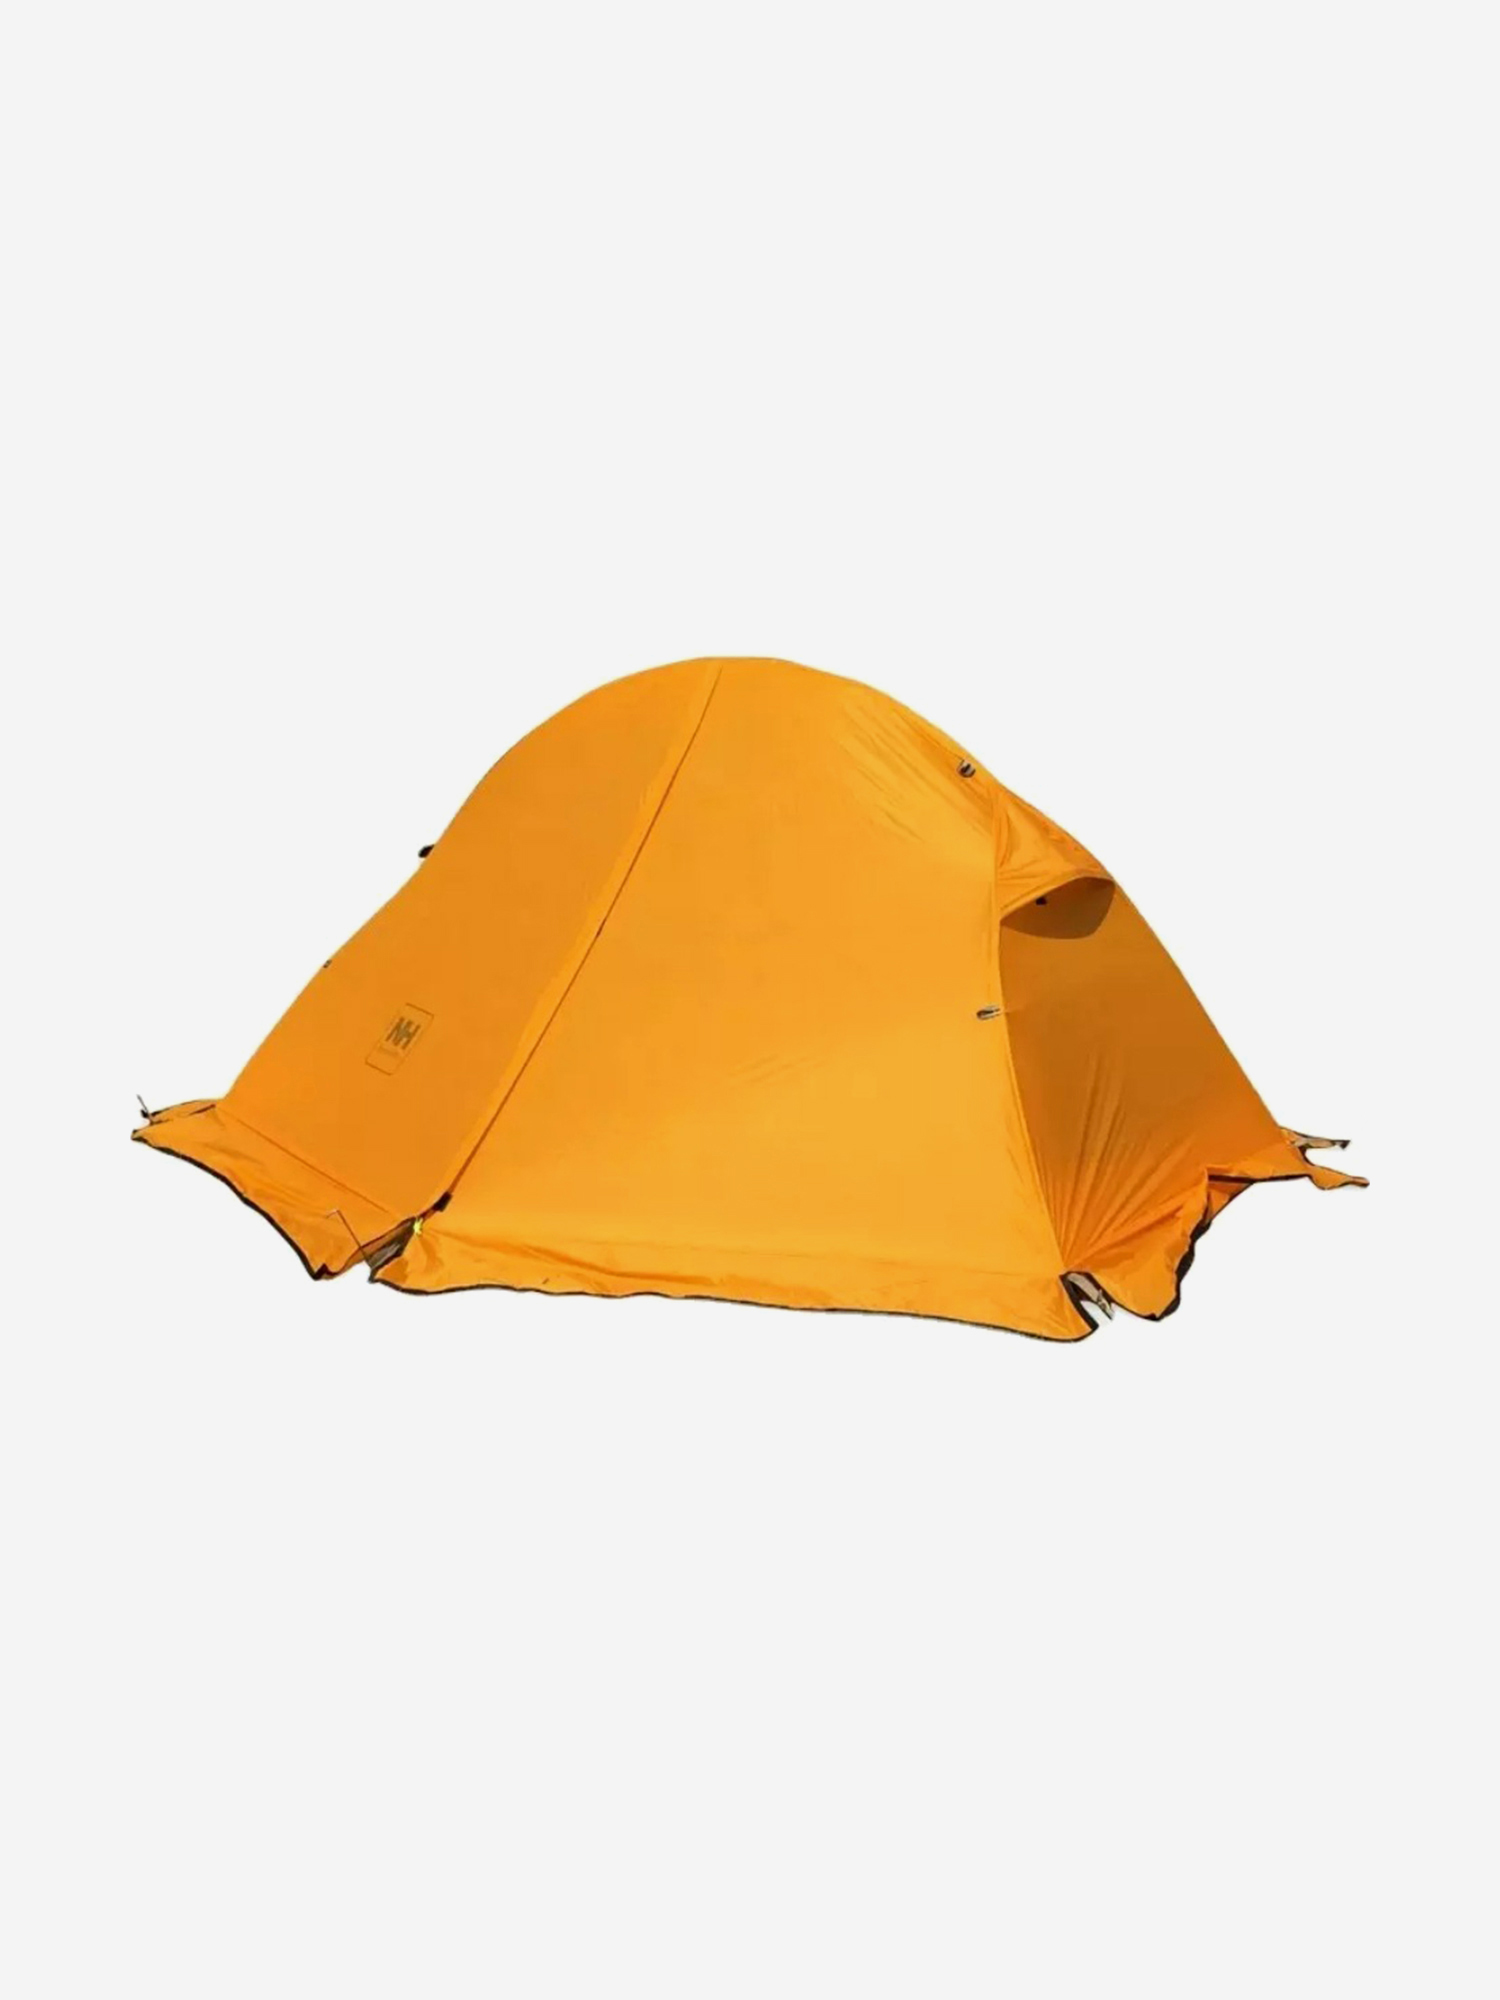 Палатка Naturehike Cycling Si 1-местная, алюминиевый каркас, сверхлегкая, снежная юбка, оранжевый, Оранжевый палатка naturehike cloud tunnel 2 местная алюминиевый каркас оранжевая оранжевый